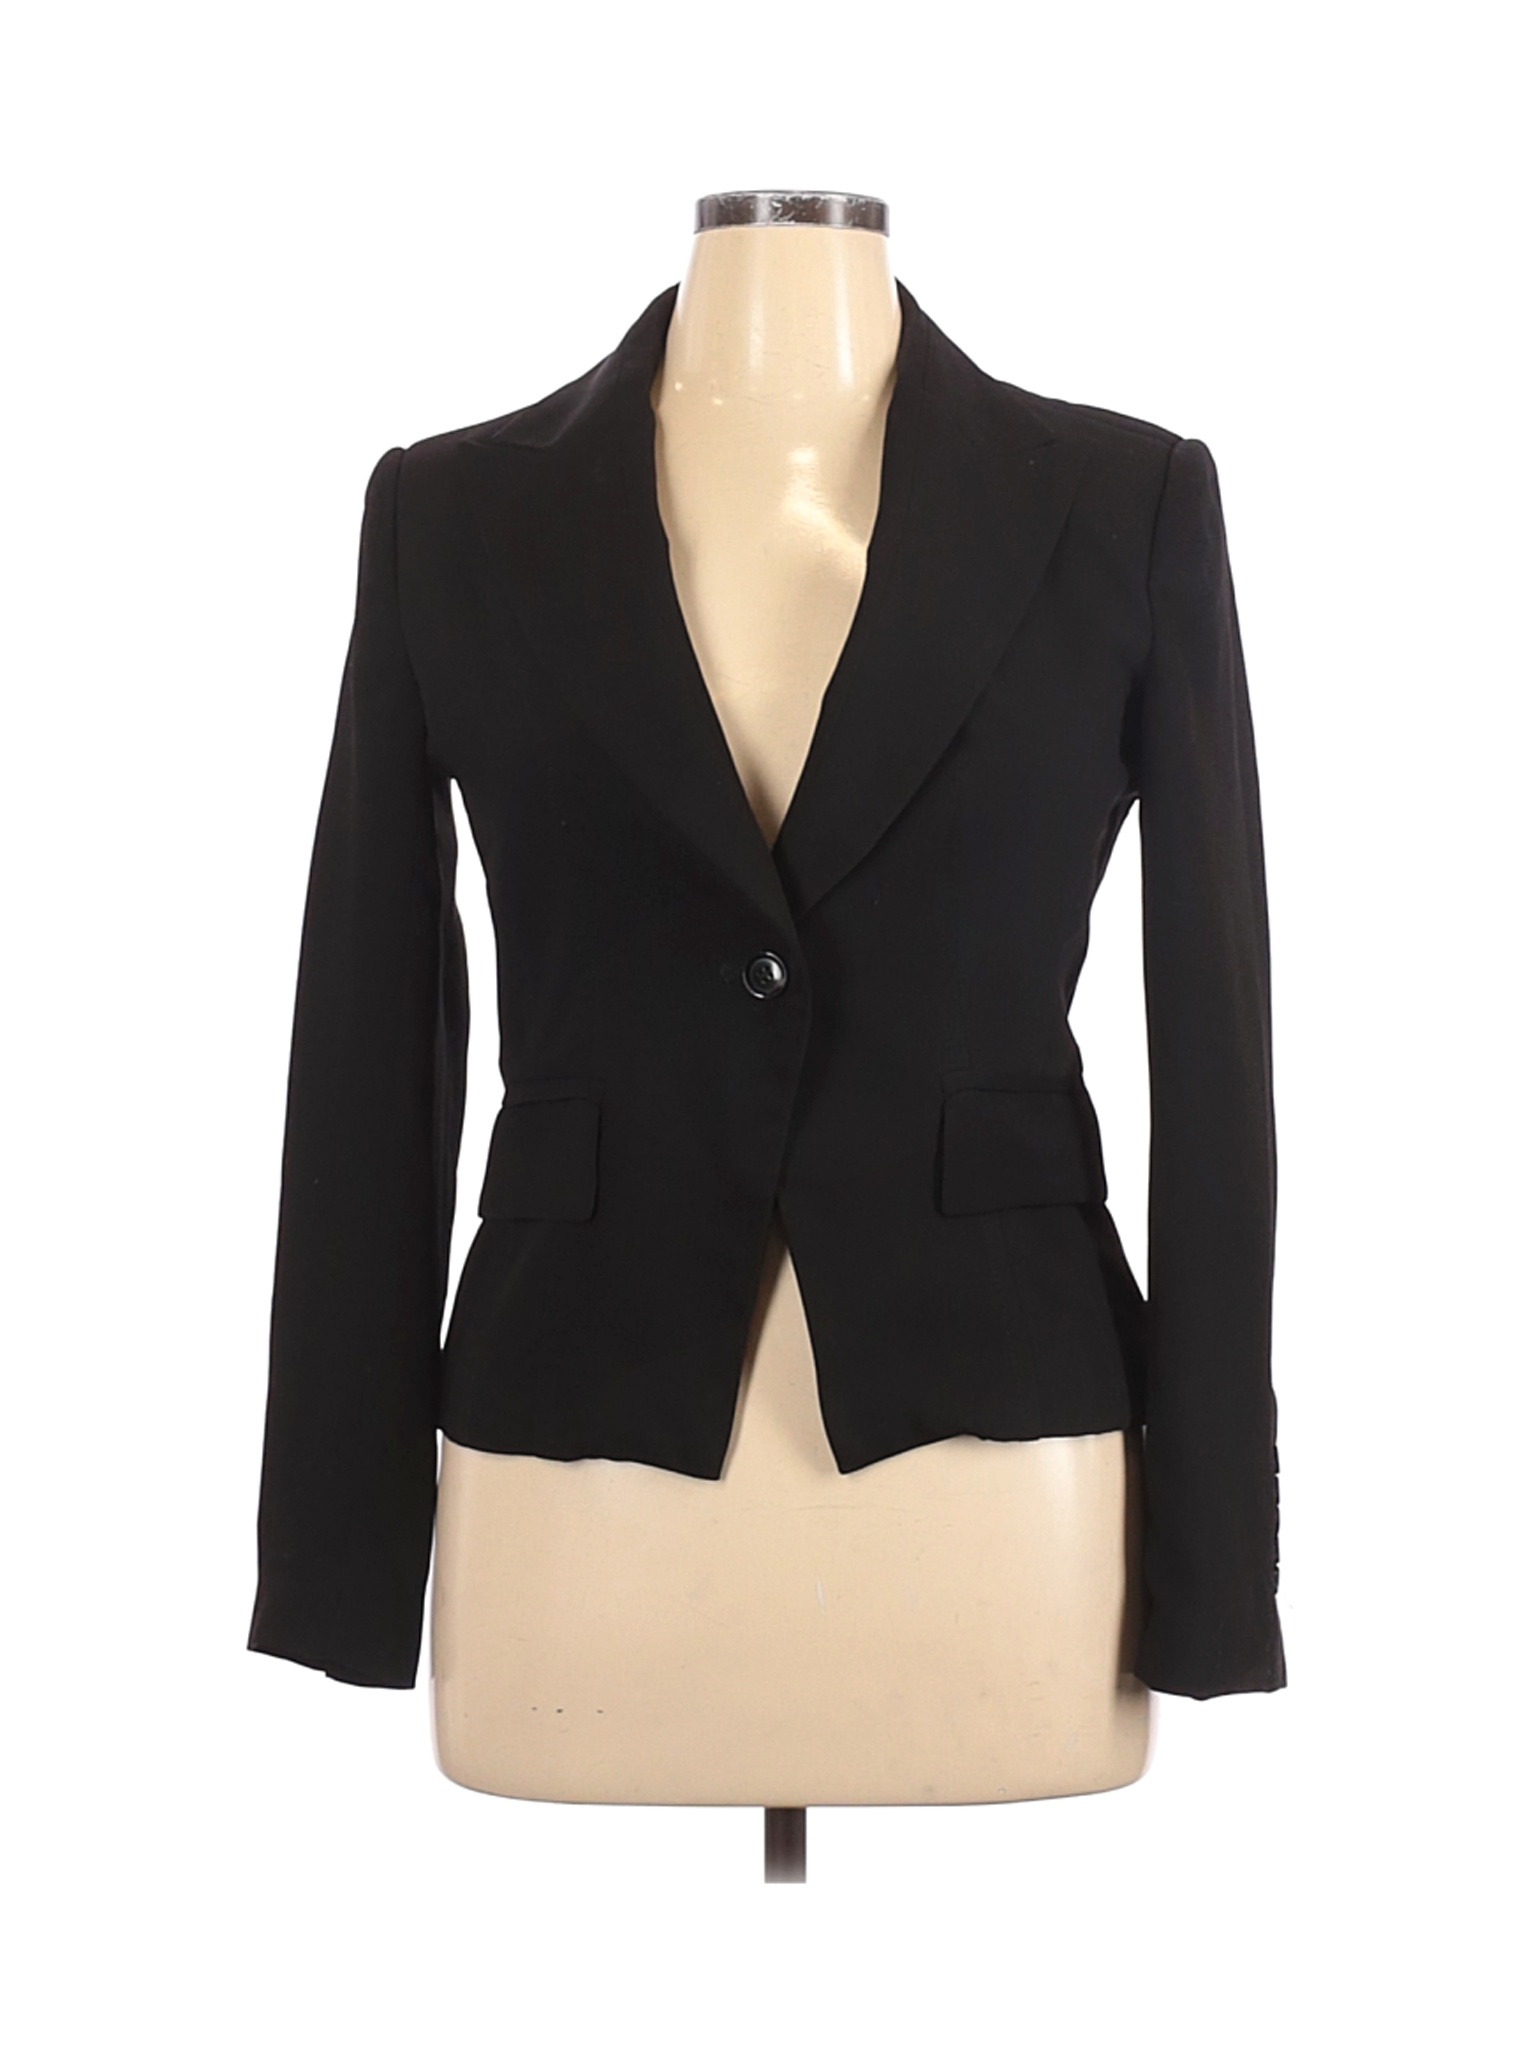 Zara Basic Women Black Blazer XL | eBay